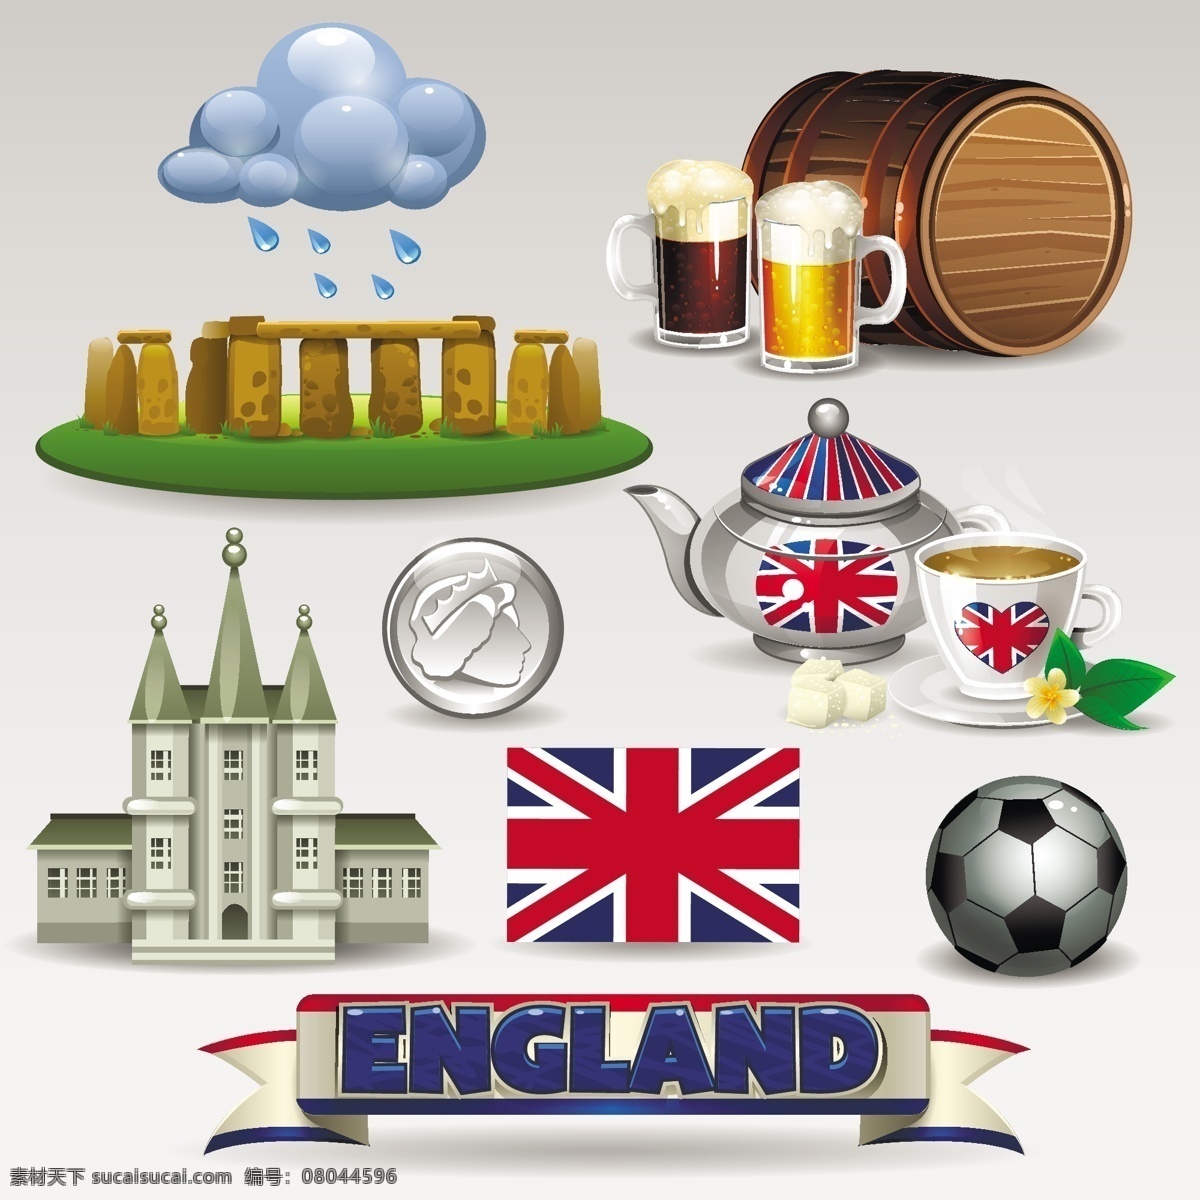 英国 元素 矢量 乌云 雨 天气 巨石阵 啤酒 啤酒桶 茶 下午茶 米字旗 足球 英镑 旅行 矢量图